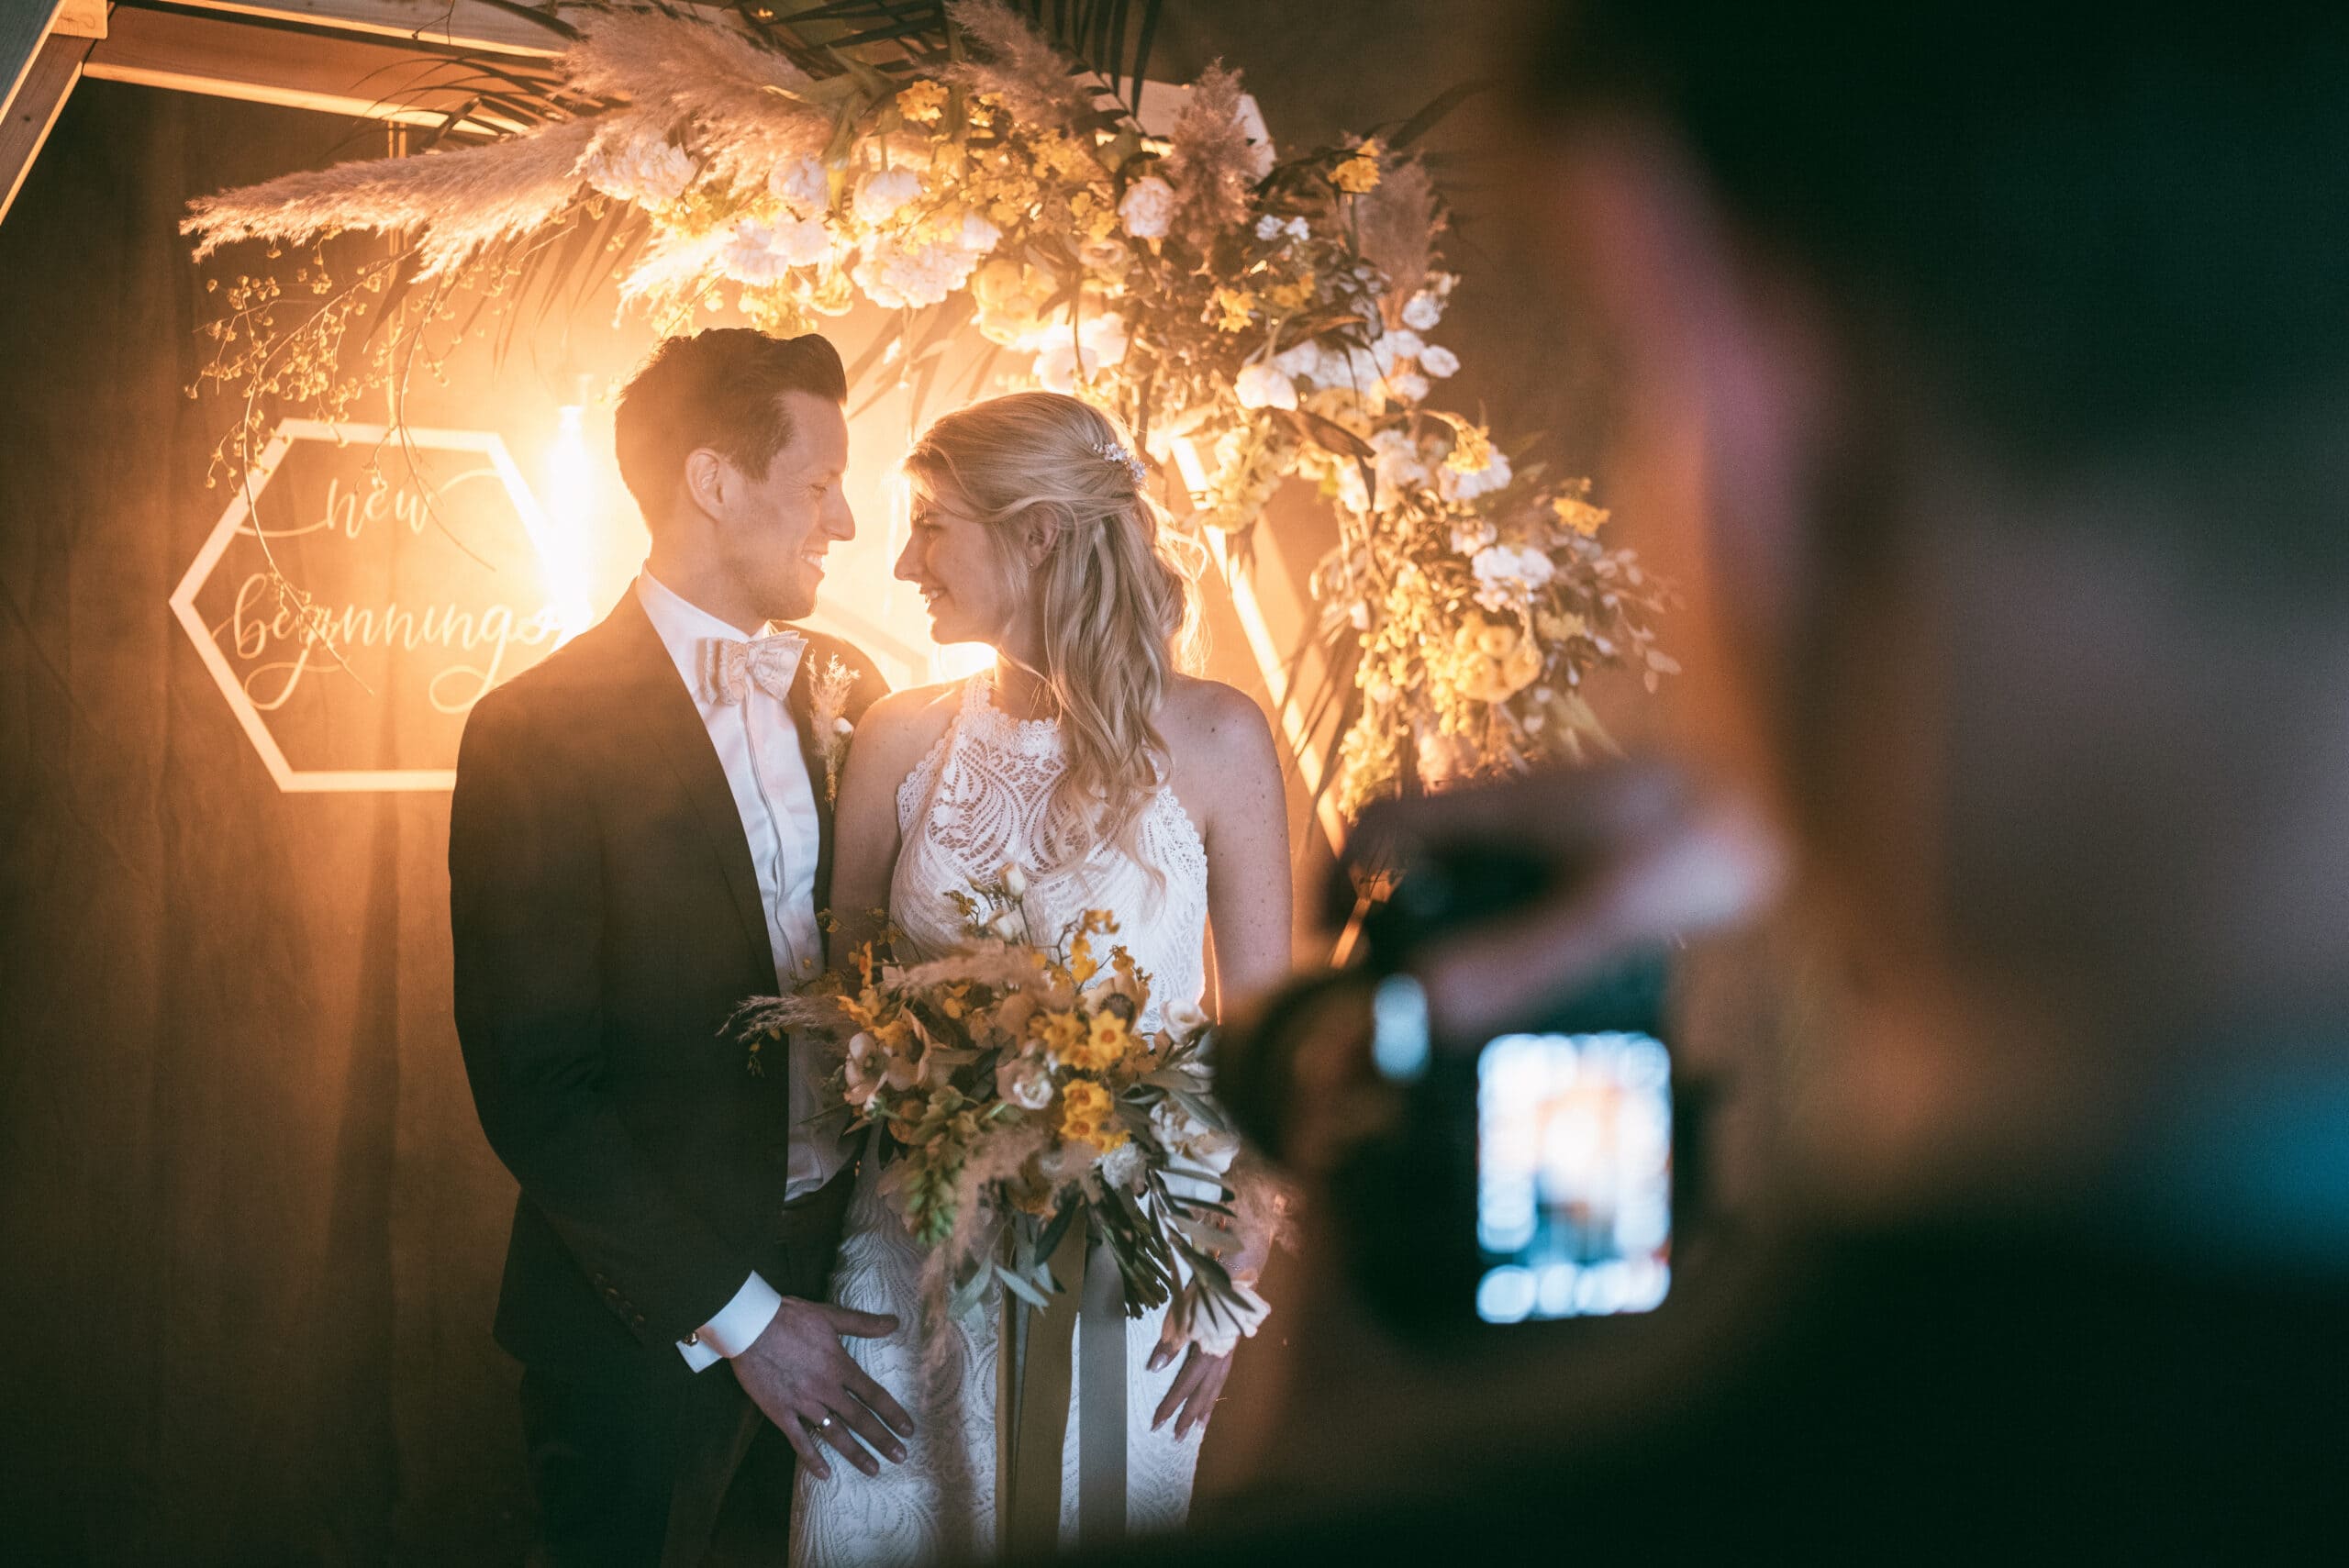 Der Fotograf fotografiert das Brautpaar auf der Hochzeit.